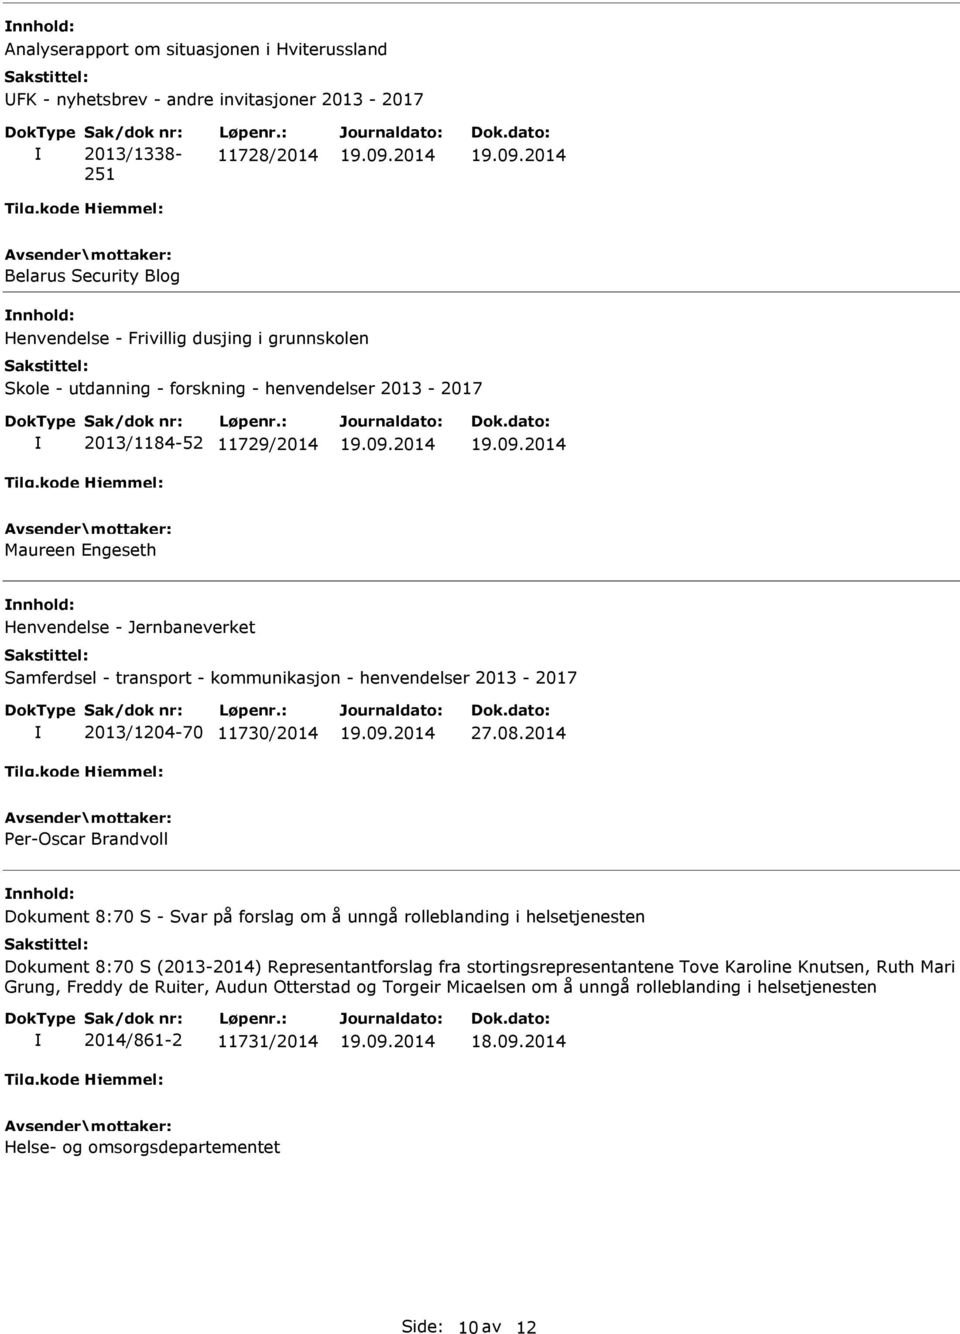 Henvendelse - Jernbaneverket Samferdsel - transport - kommunikasjon - henvendelser 2013-2017 2013/1204-70 11730/2014 27.08.